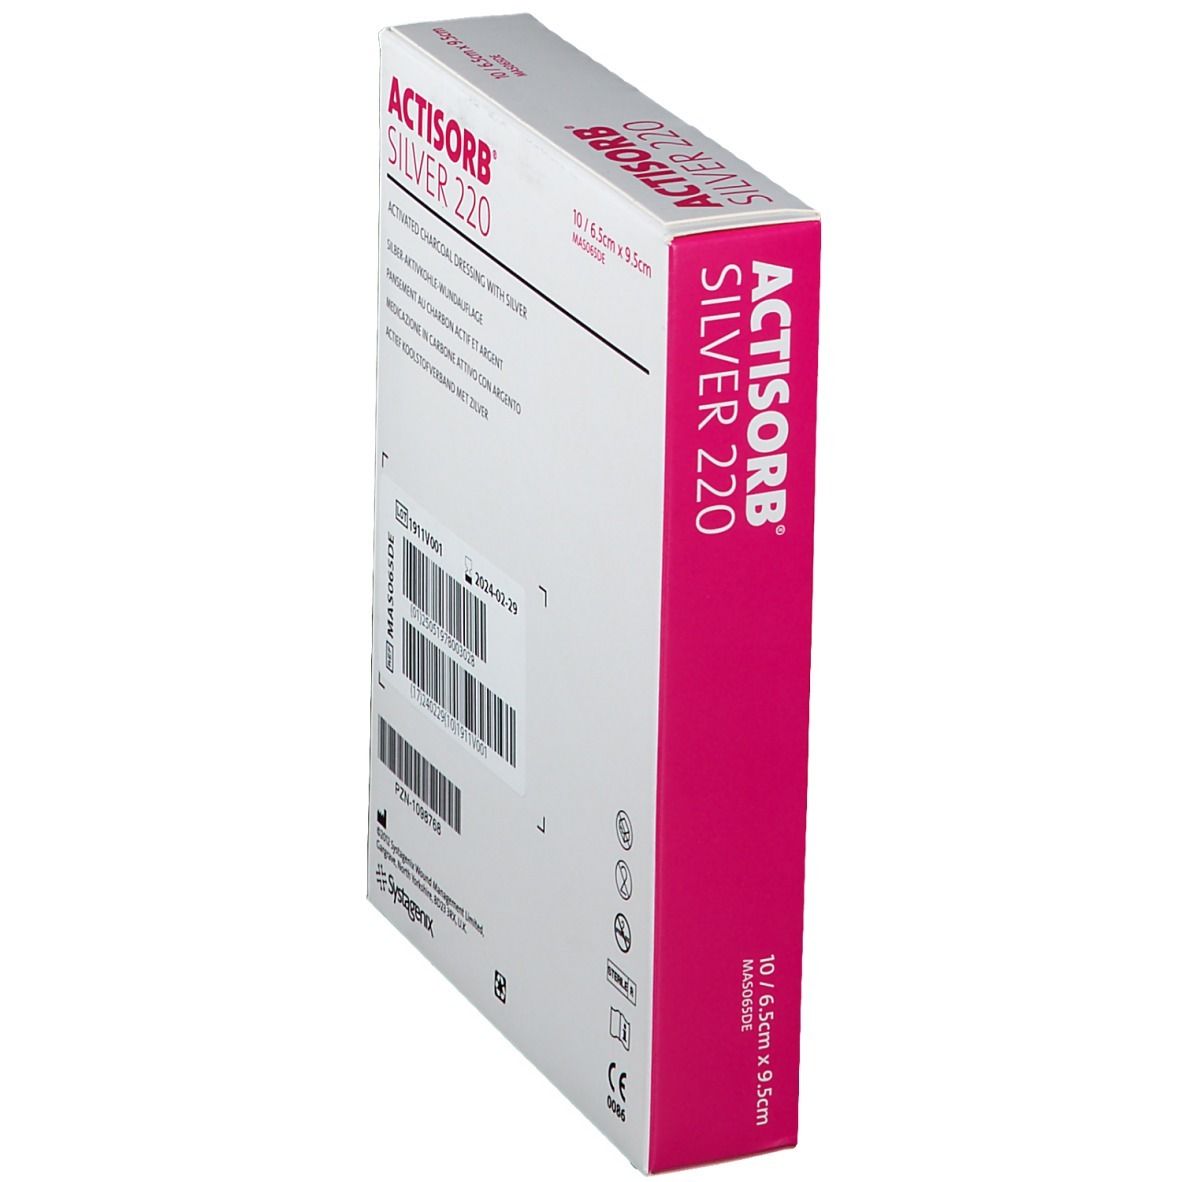 ACTISORB® SILVER 220 9,5 x 6,5 cm steril